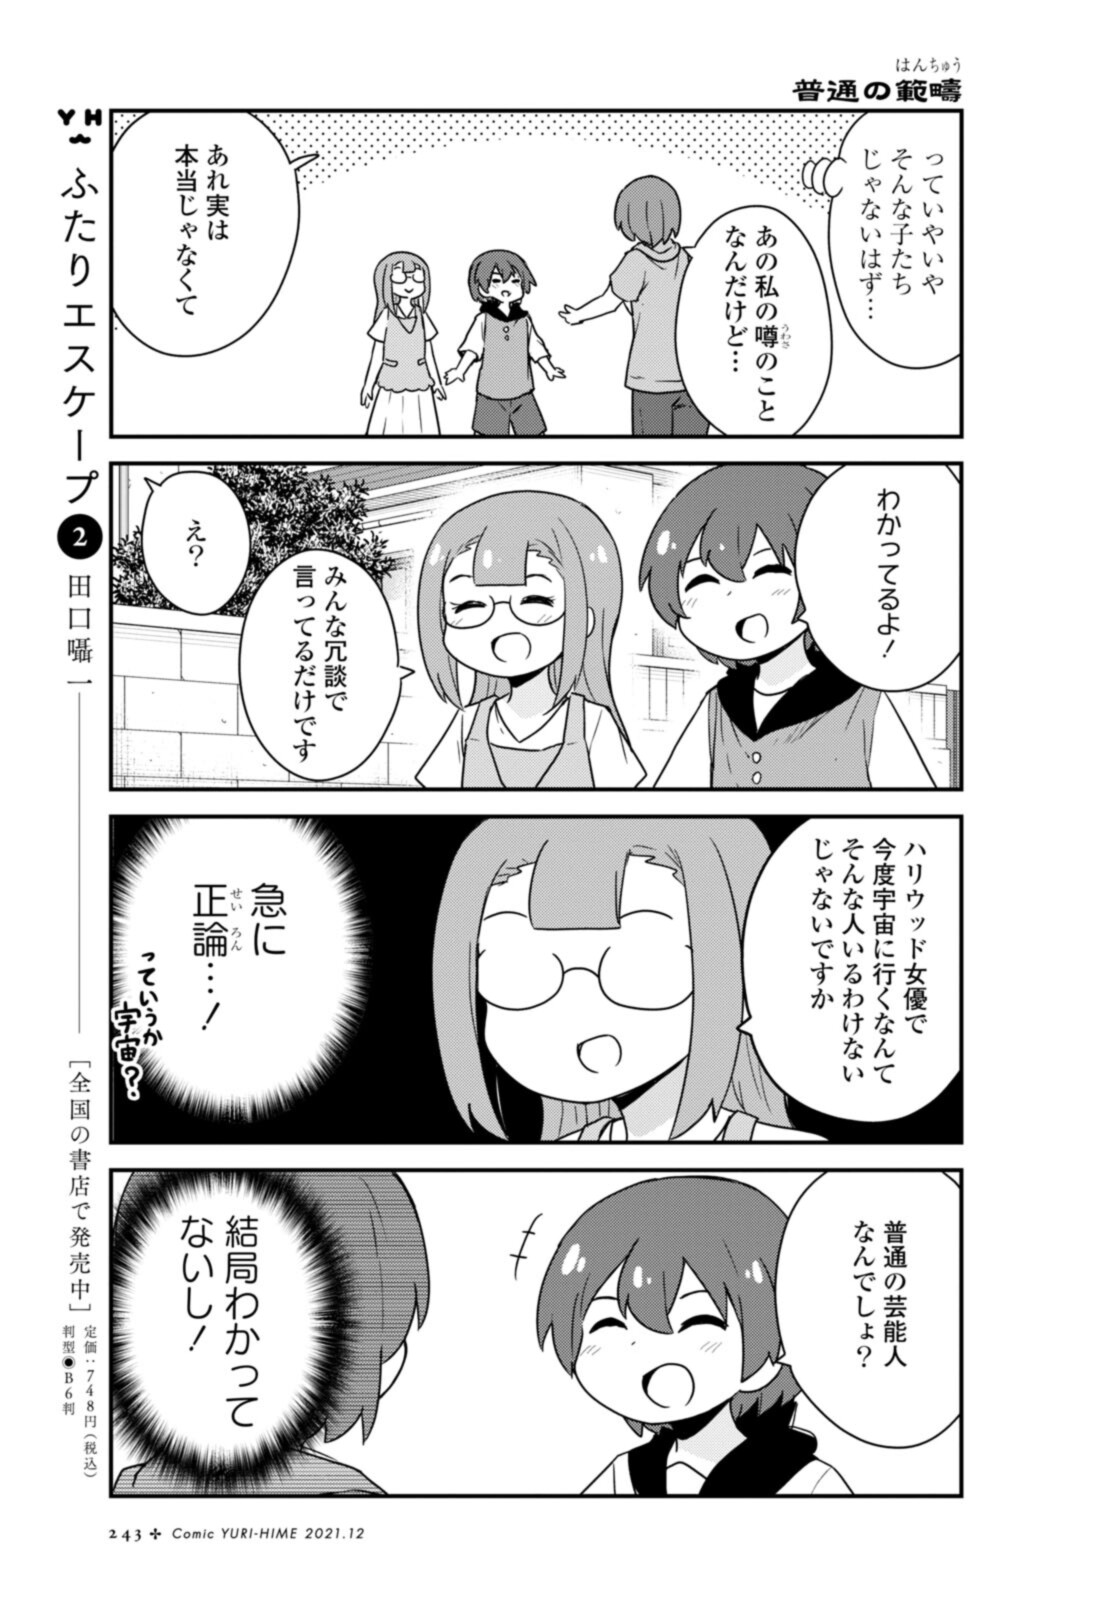 Watashi ni Tenshi ga Maiorita! - Chapter 89 - Page 5